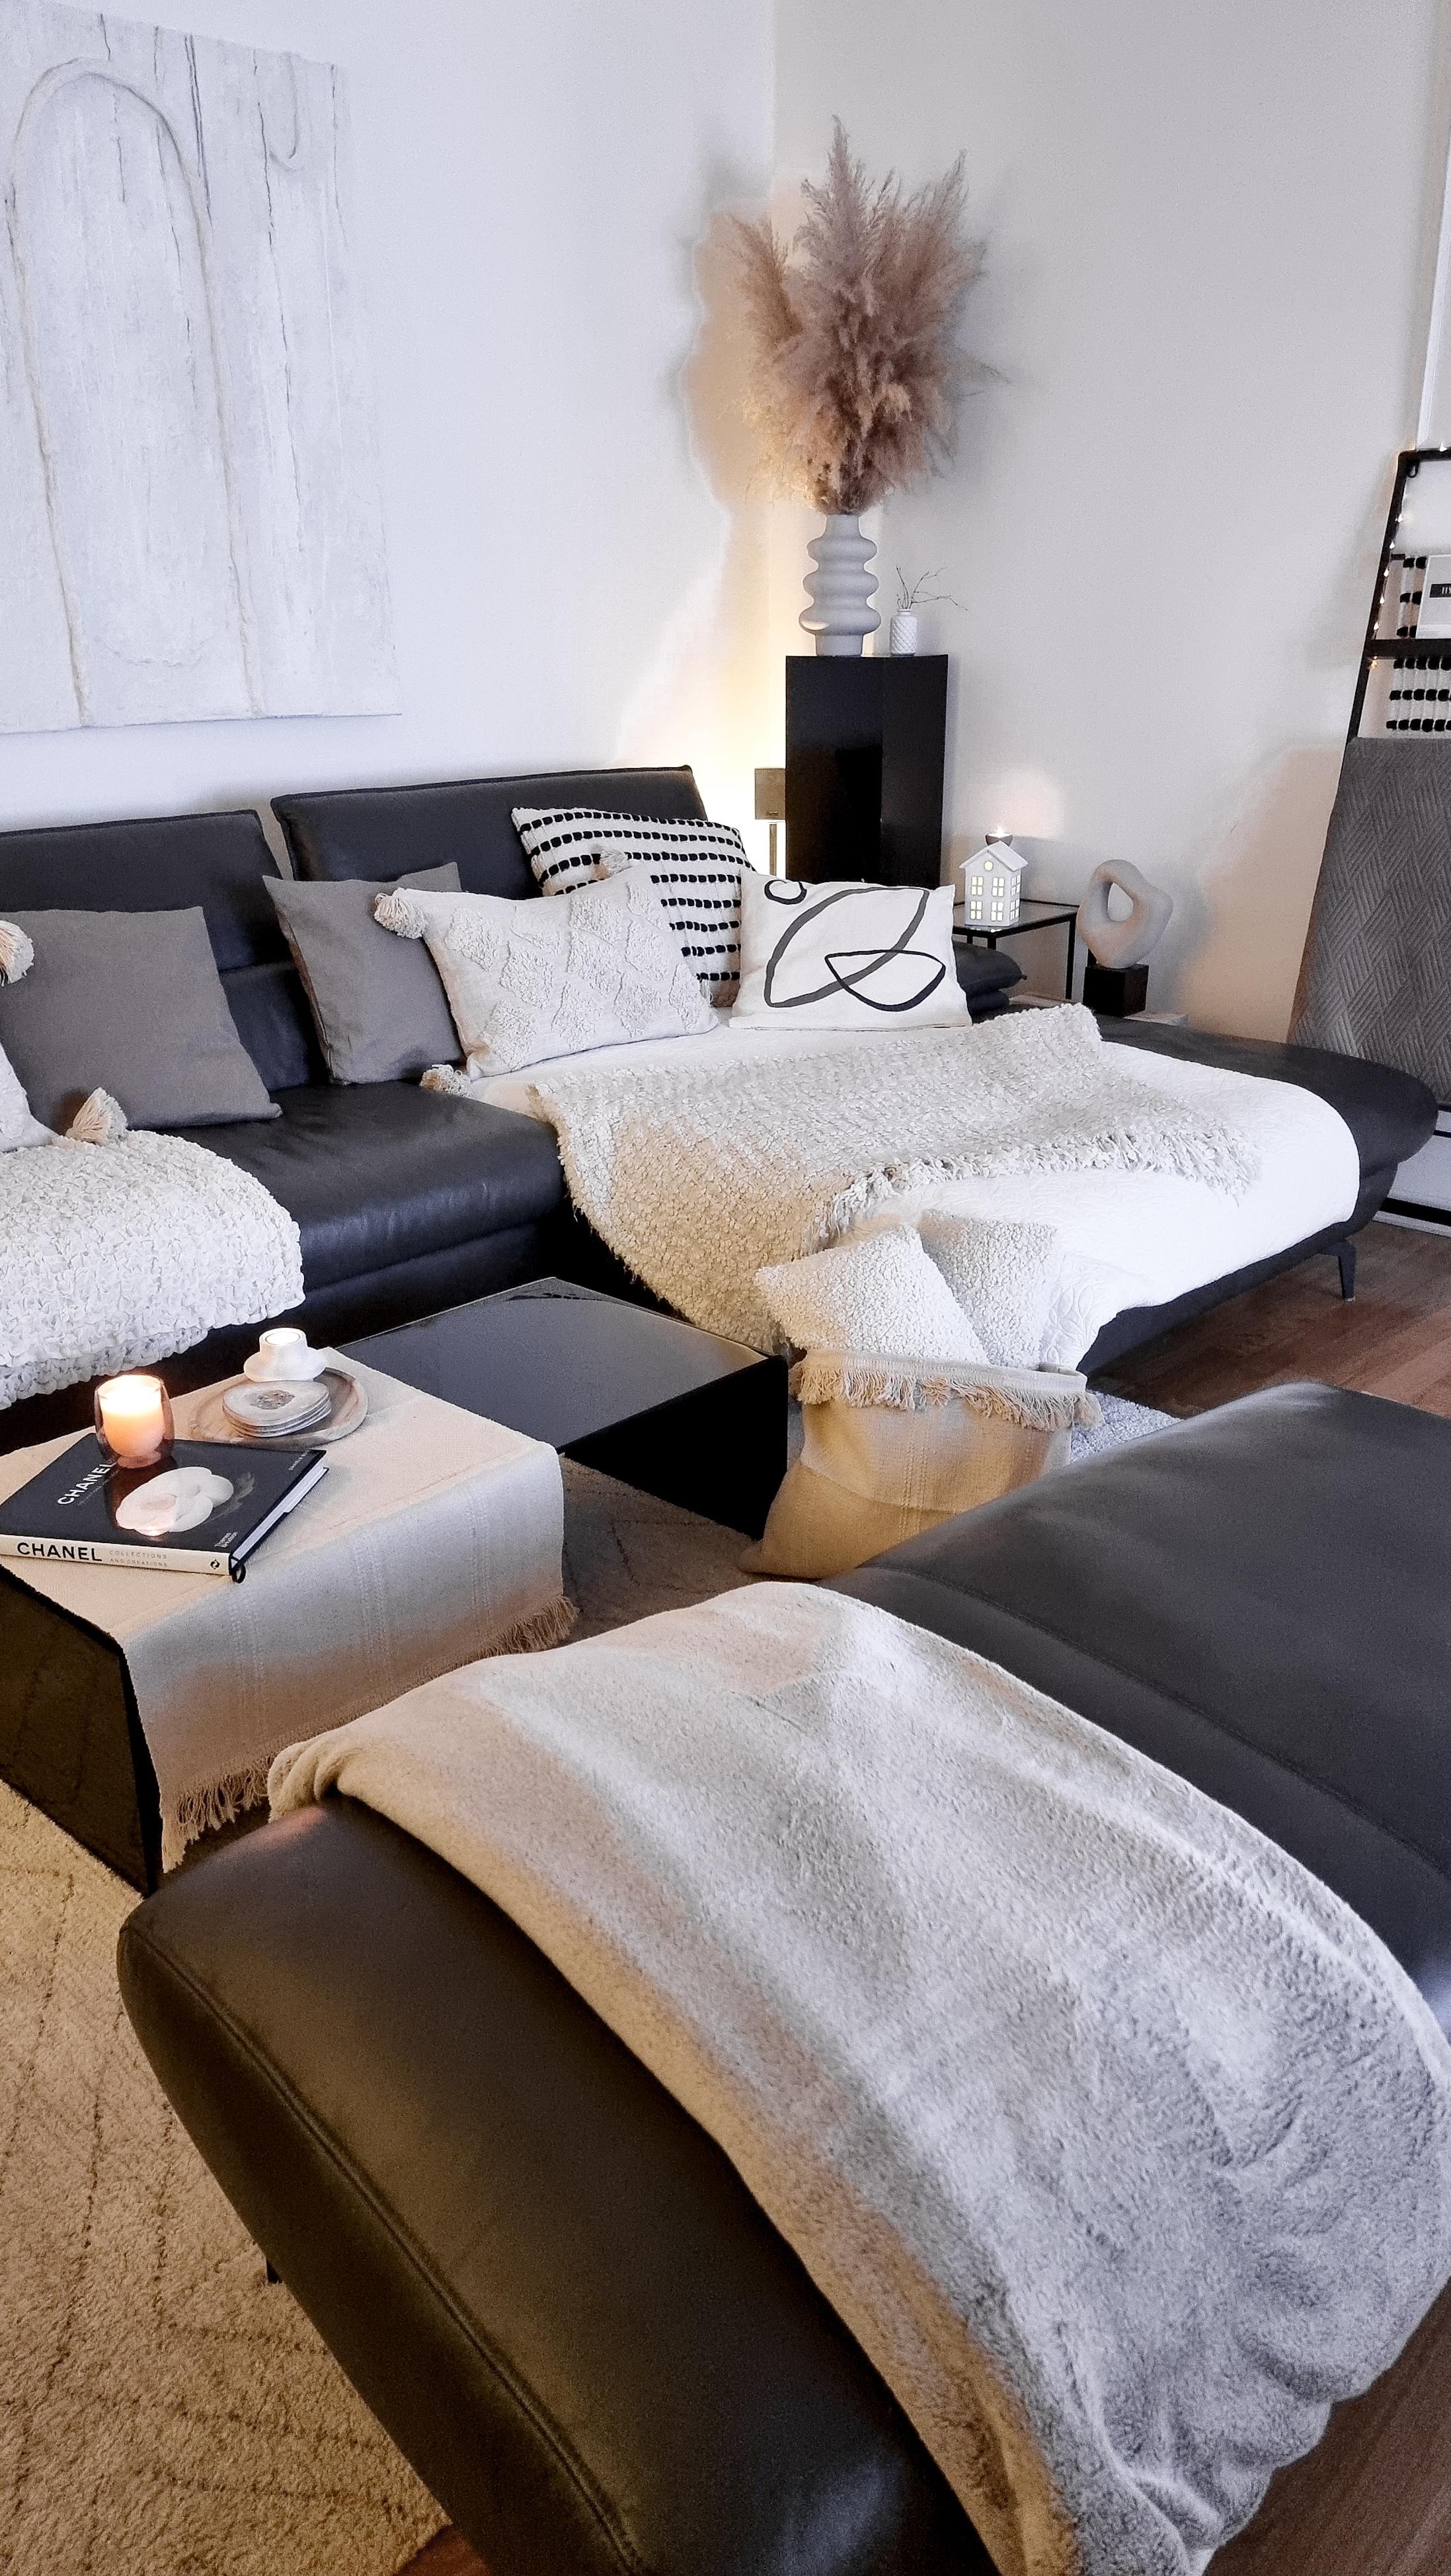 Wohnzimmer Liebe.
Gerade haben wir vieles in grau, weiss und schwarz #whiteliving #geliebteszuhause #inspohome #mynordic